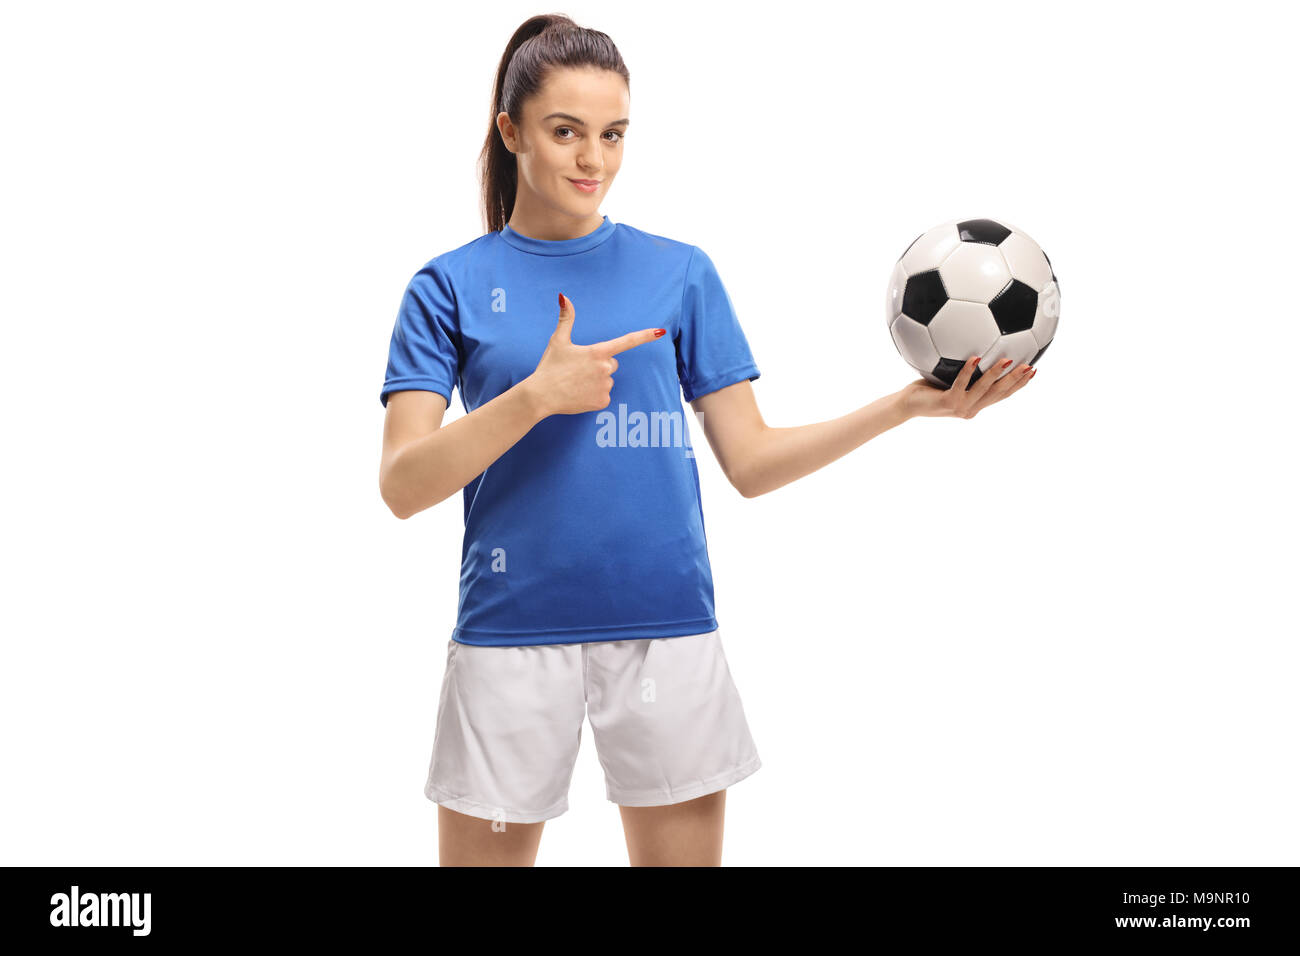 Calcio femminile giocatore con un calcio e puntamento isolati su sfondo bianco Foto Stock